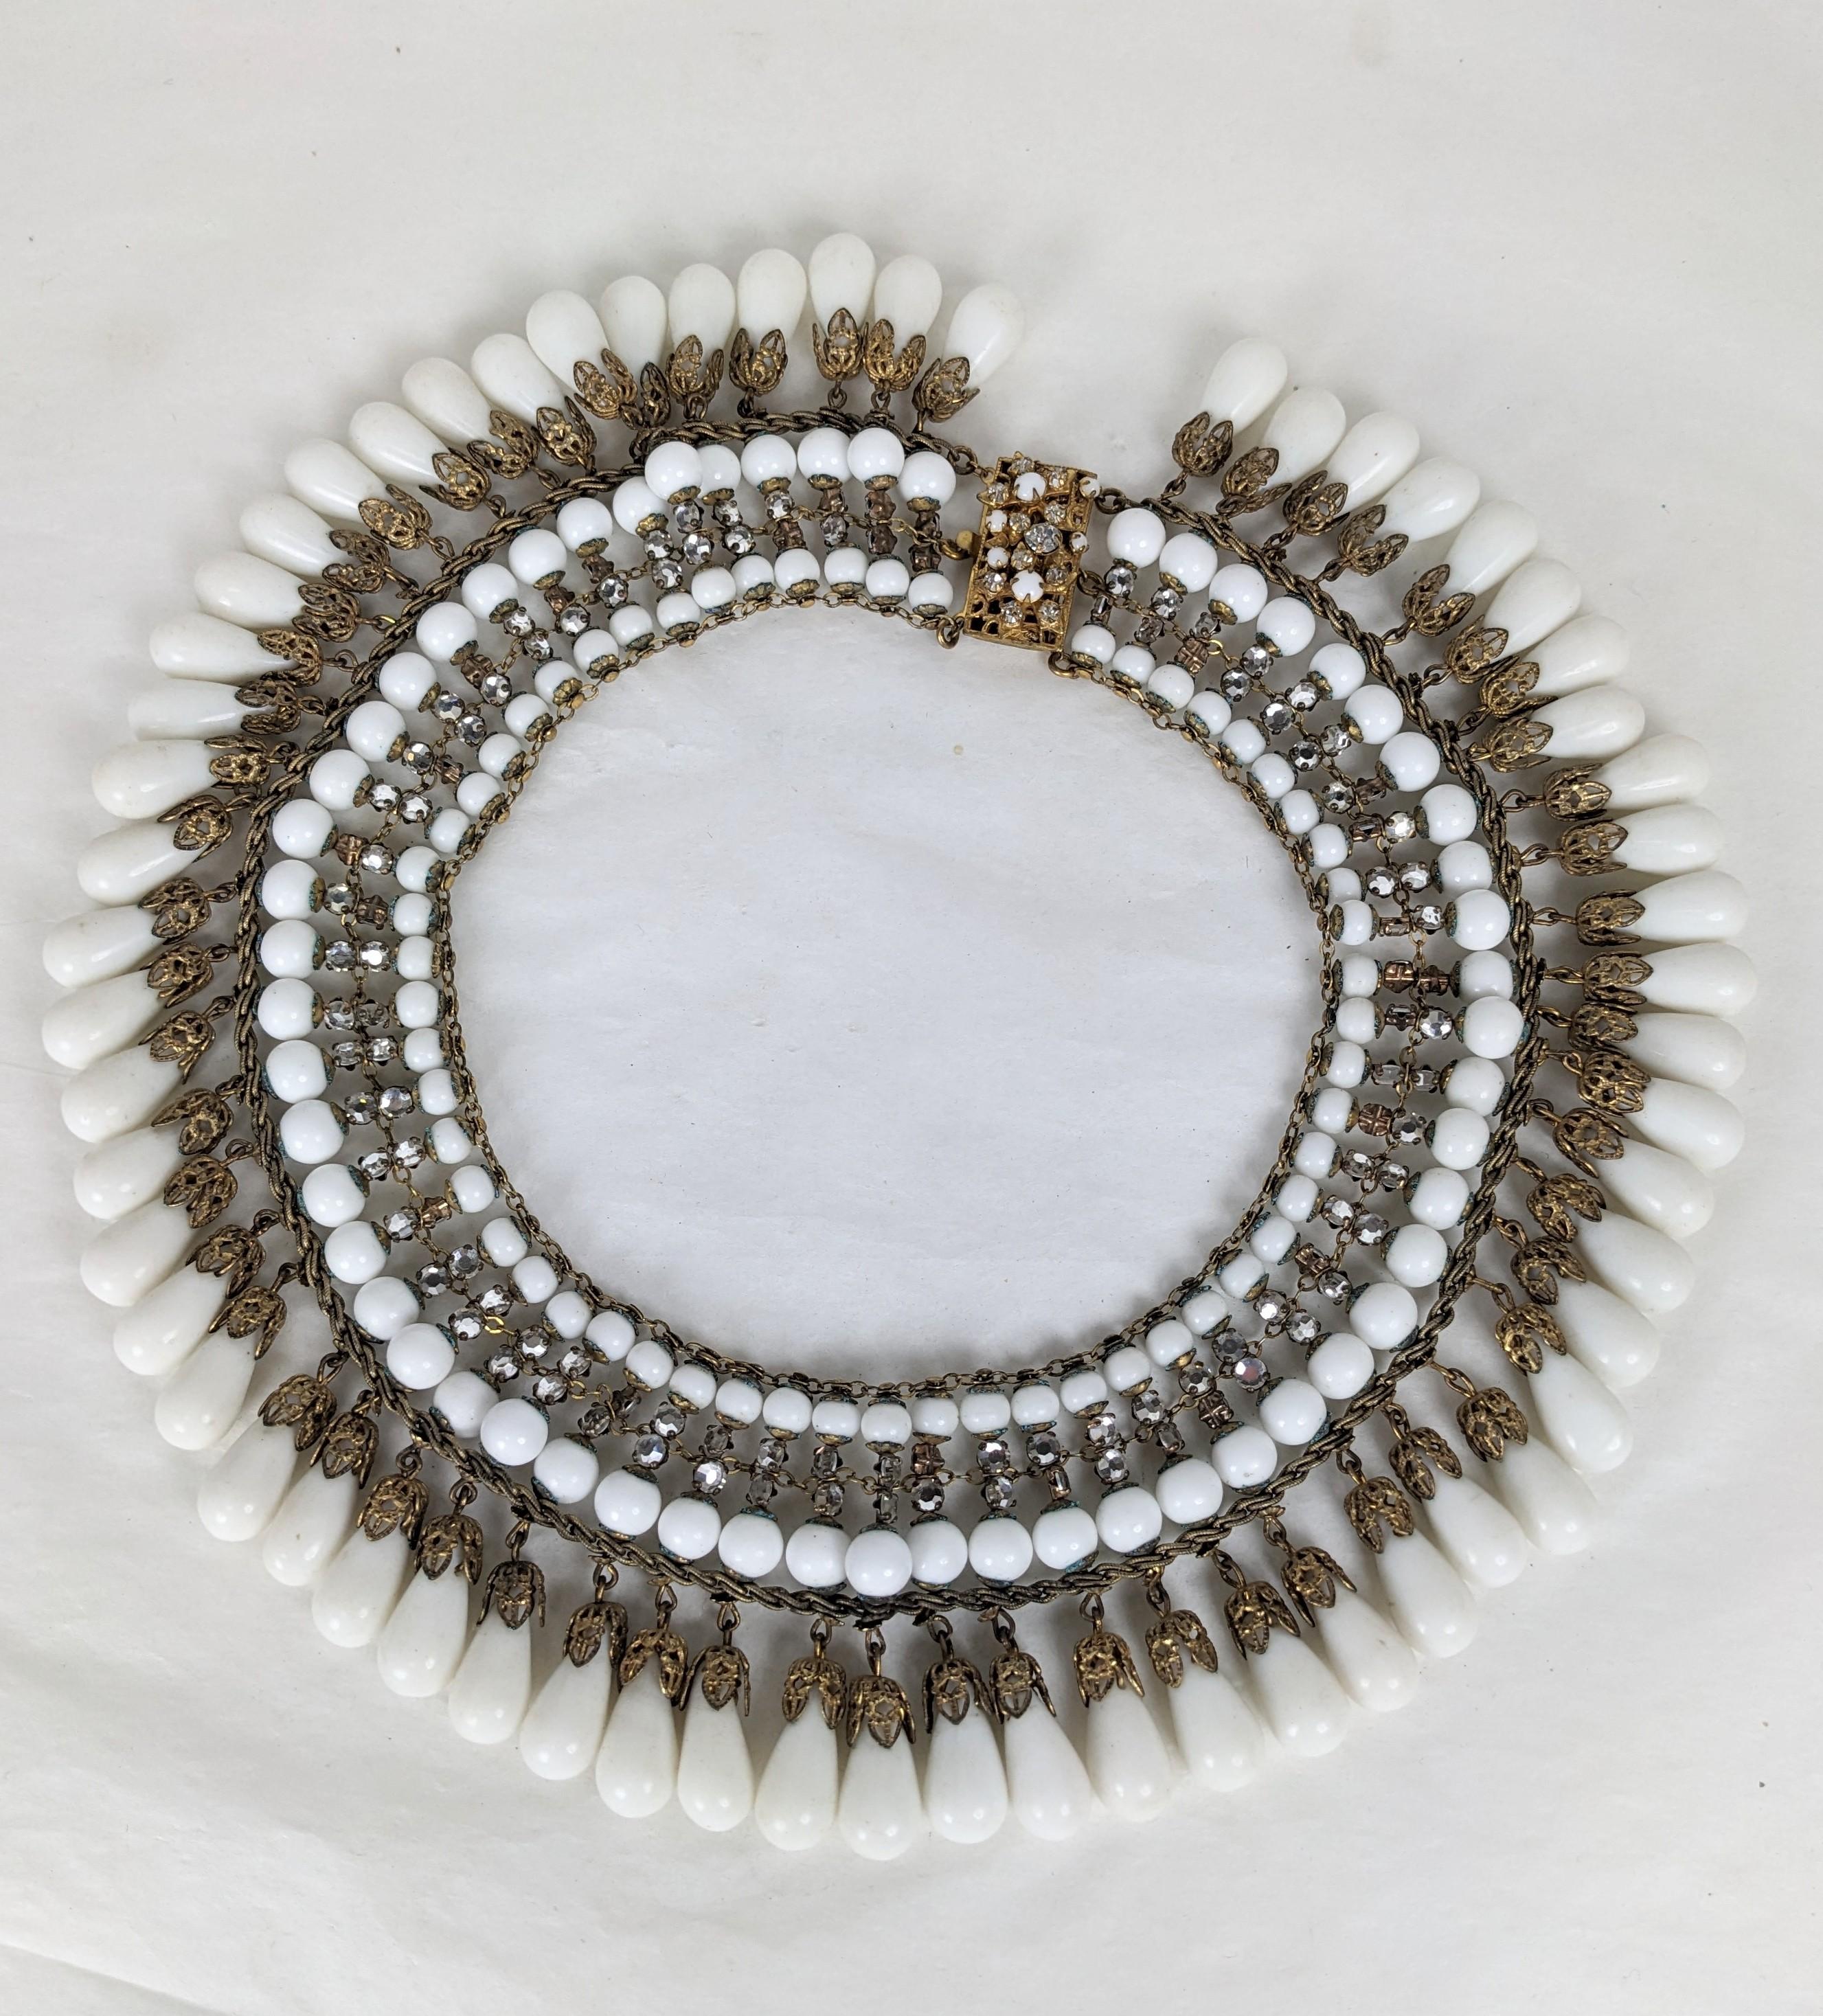 Impressionnant et rare collier en verre au lait pavé de Miriam Haskell datant des années 1940. Grande échelle et construction élaborée avec des centaines de cristaux roses montés à la main sur des barres avec des filigranes dorés et des perles en